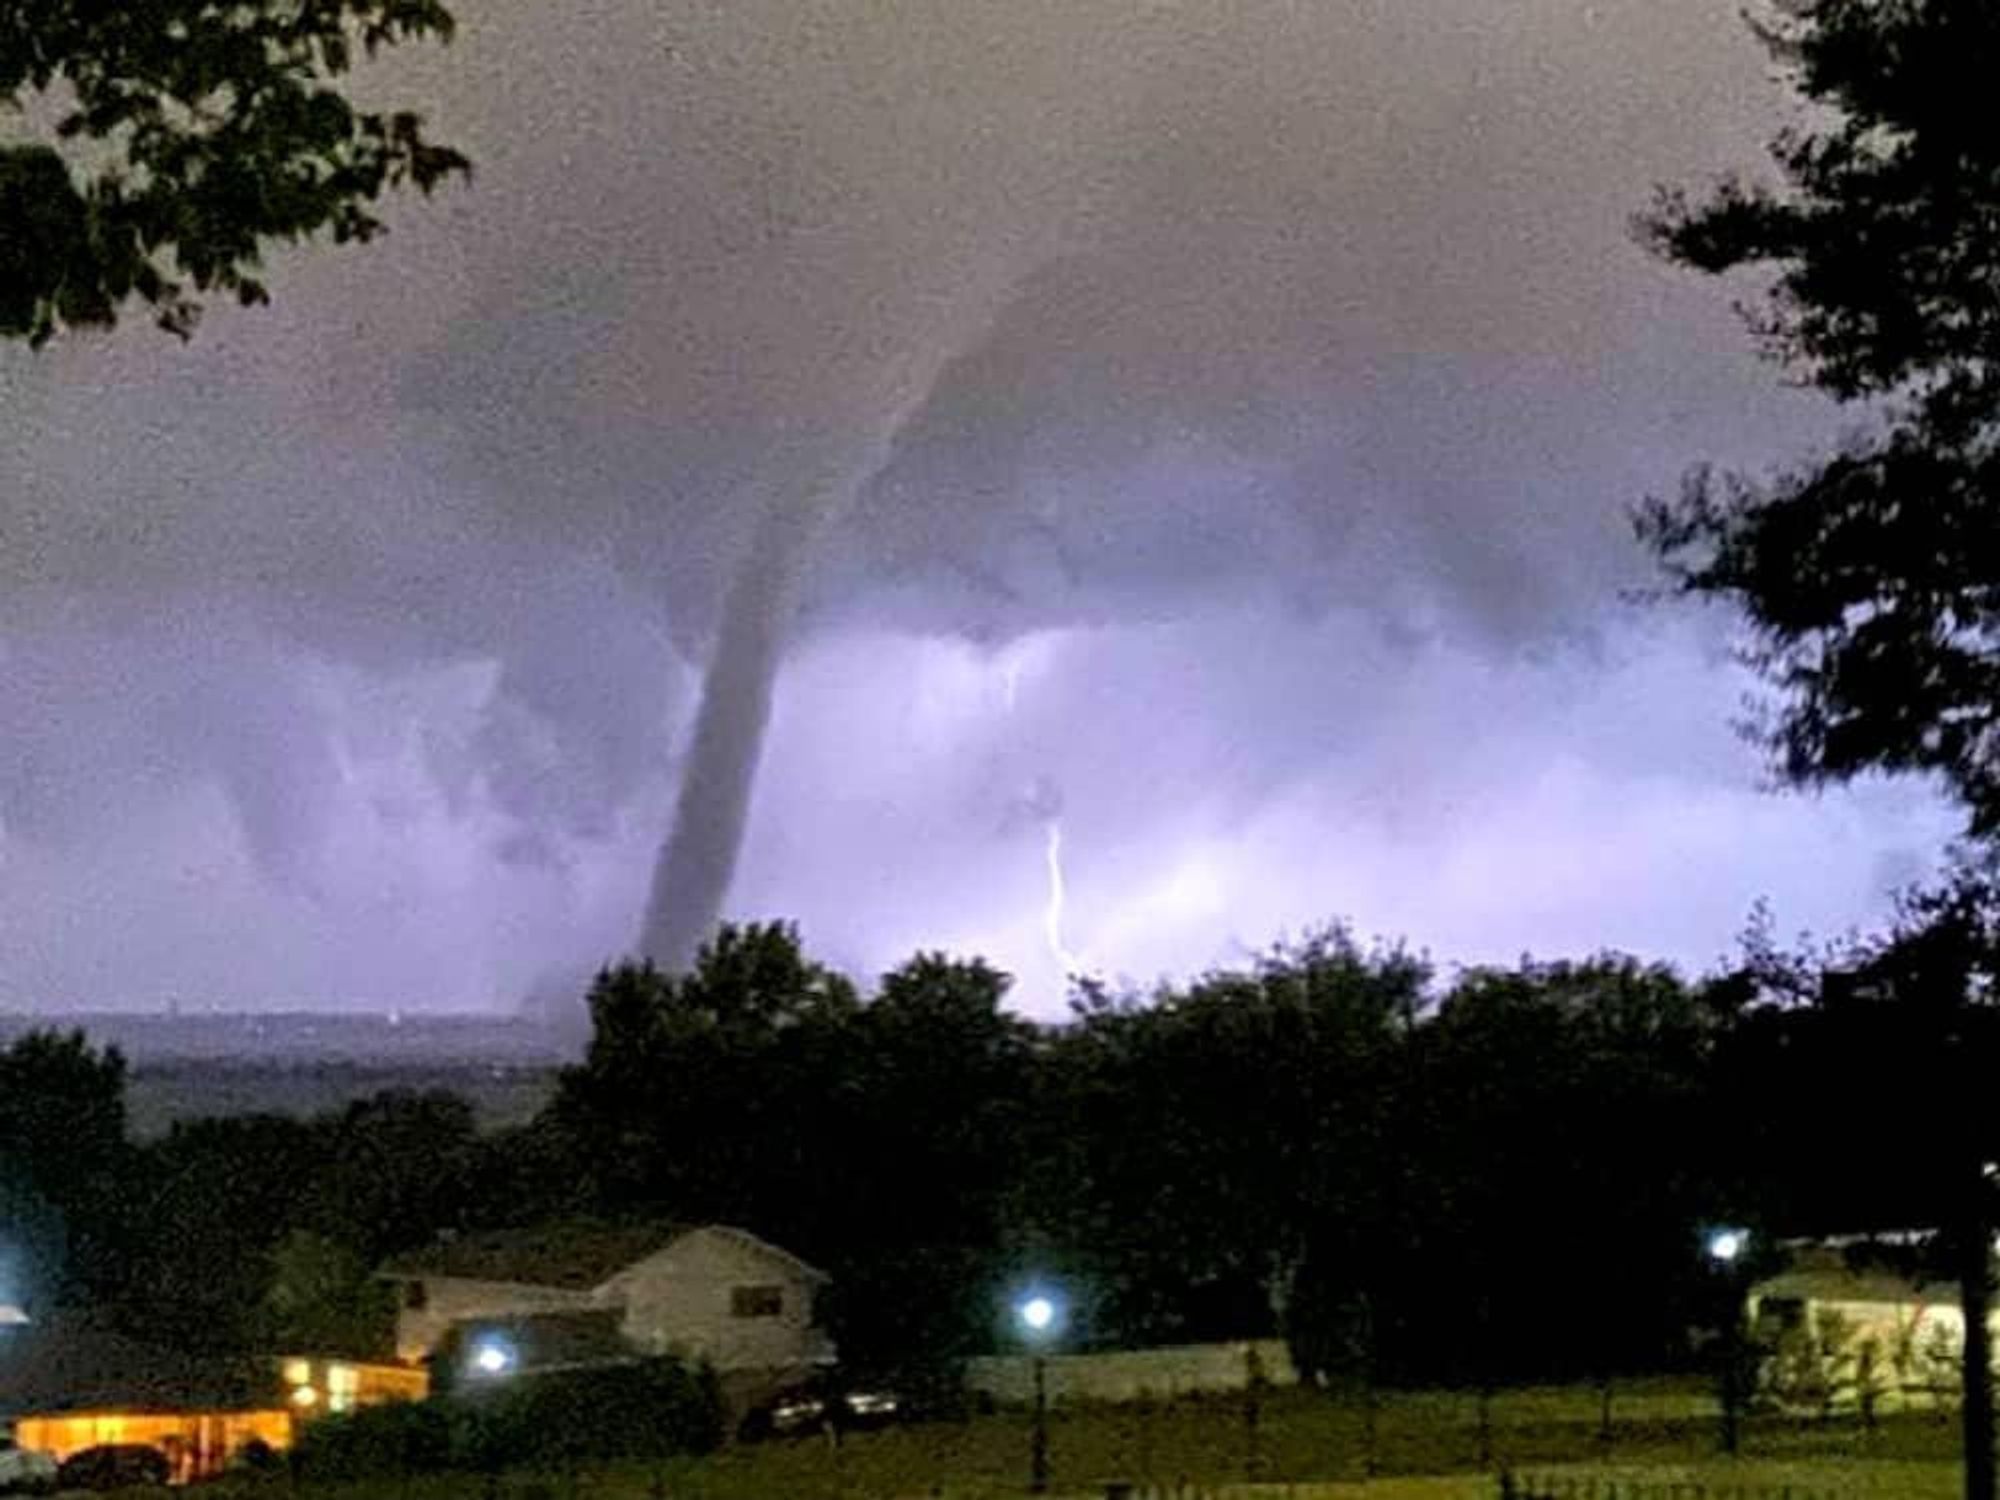 EF3 Tornado Path in North Dallas Preston Hollow Editorial Stock Photo -  Image of hillcrest, multimillion: 163748918